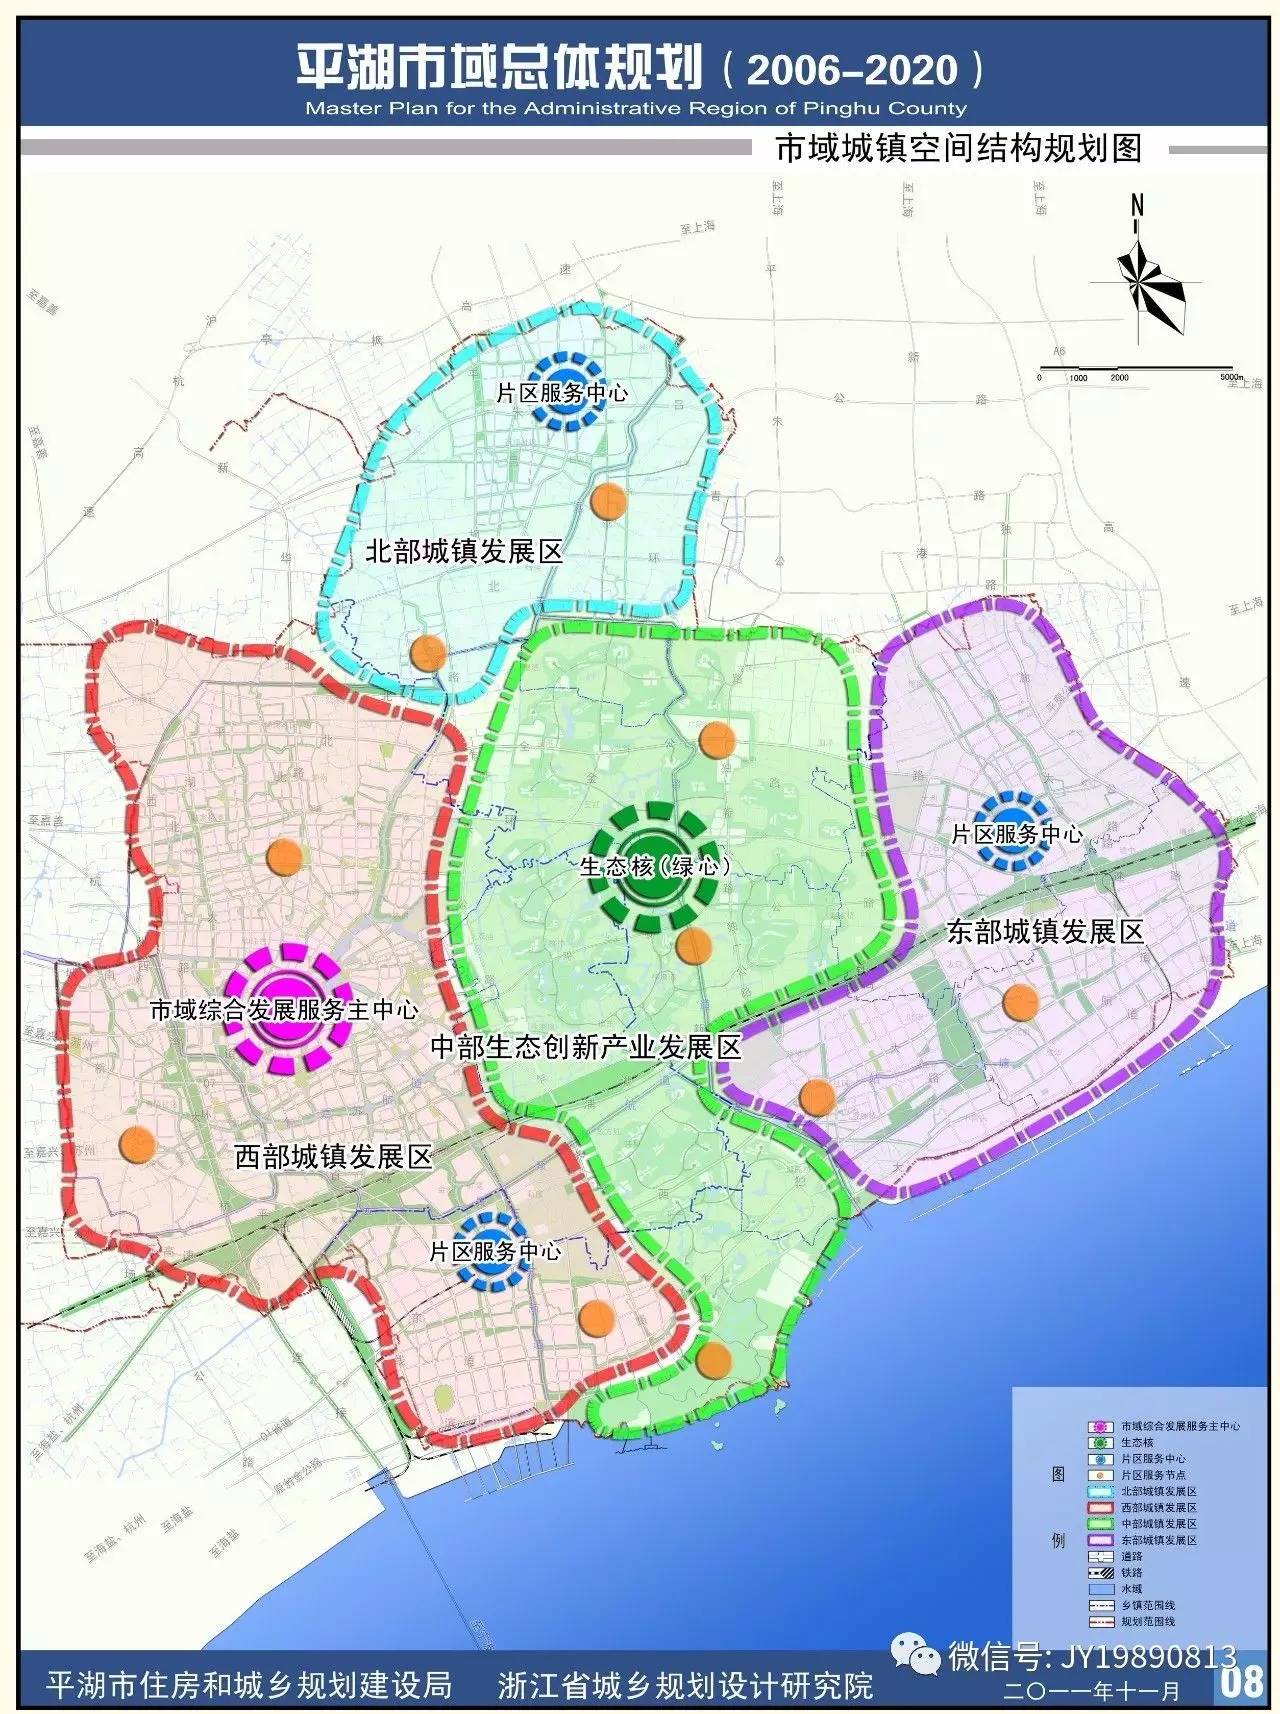 以中心城区和各级城镇为核心,以干线交通系统为纽带,规划在平湖市域